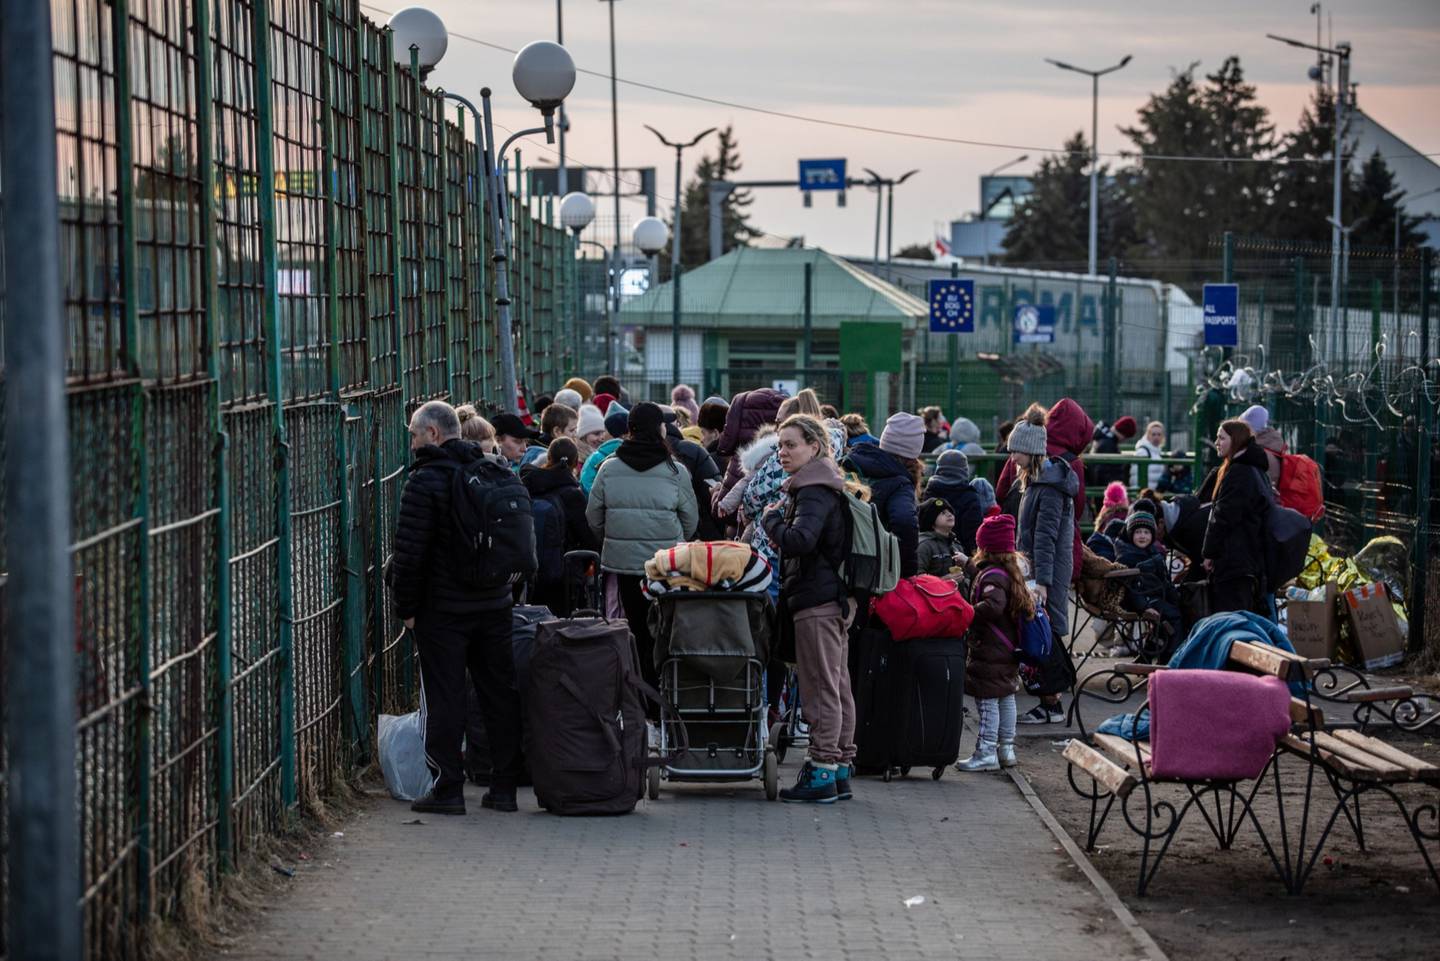 Se calcula que al menos 2,5 millones de ucranianos han huido de su país tras la invasión rusa, y Polonia se ha llevado la mayor parte de la afluencia. Fotógrafo: Ángel García/Bloombergdfd